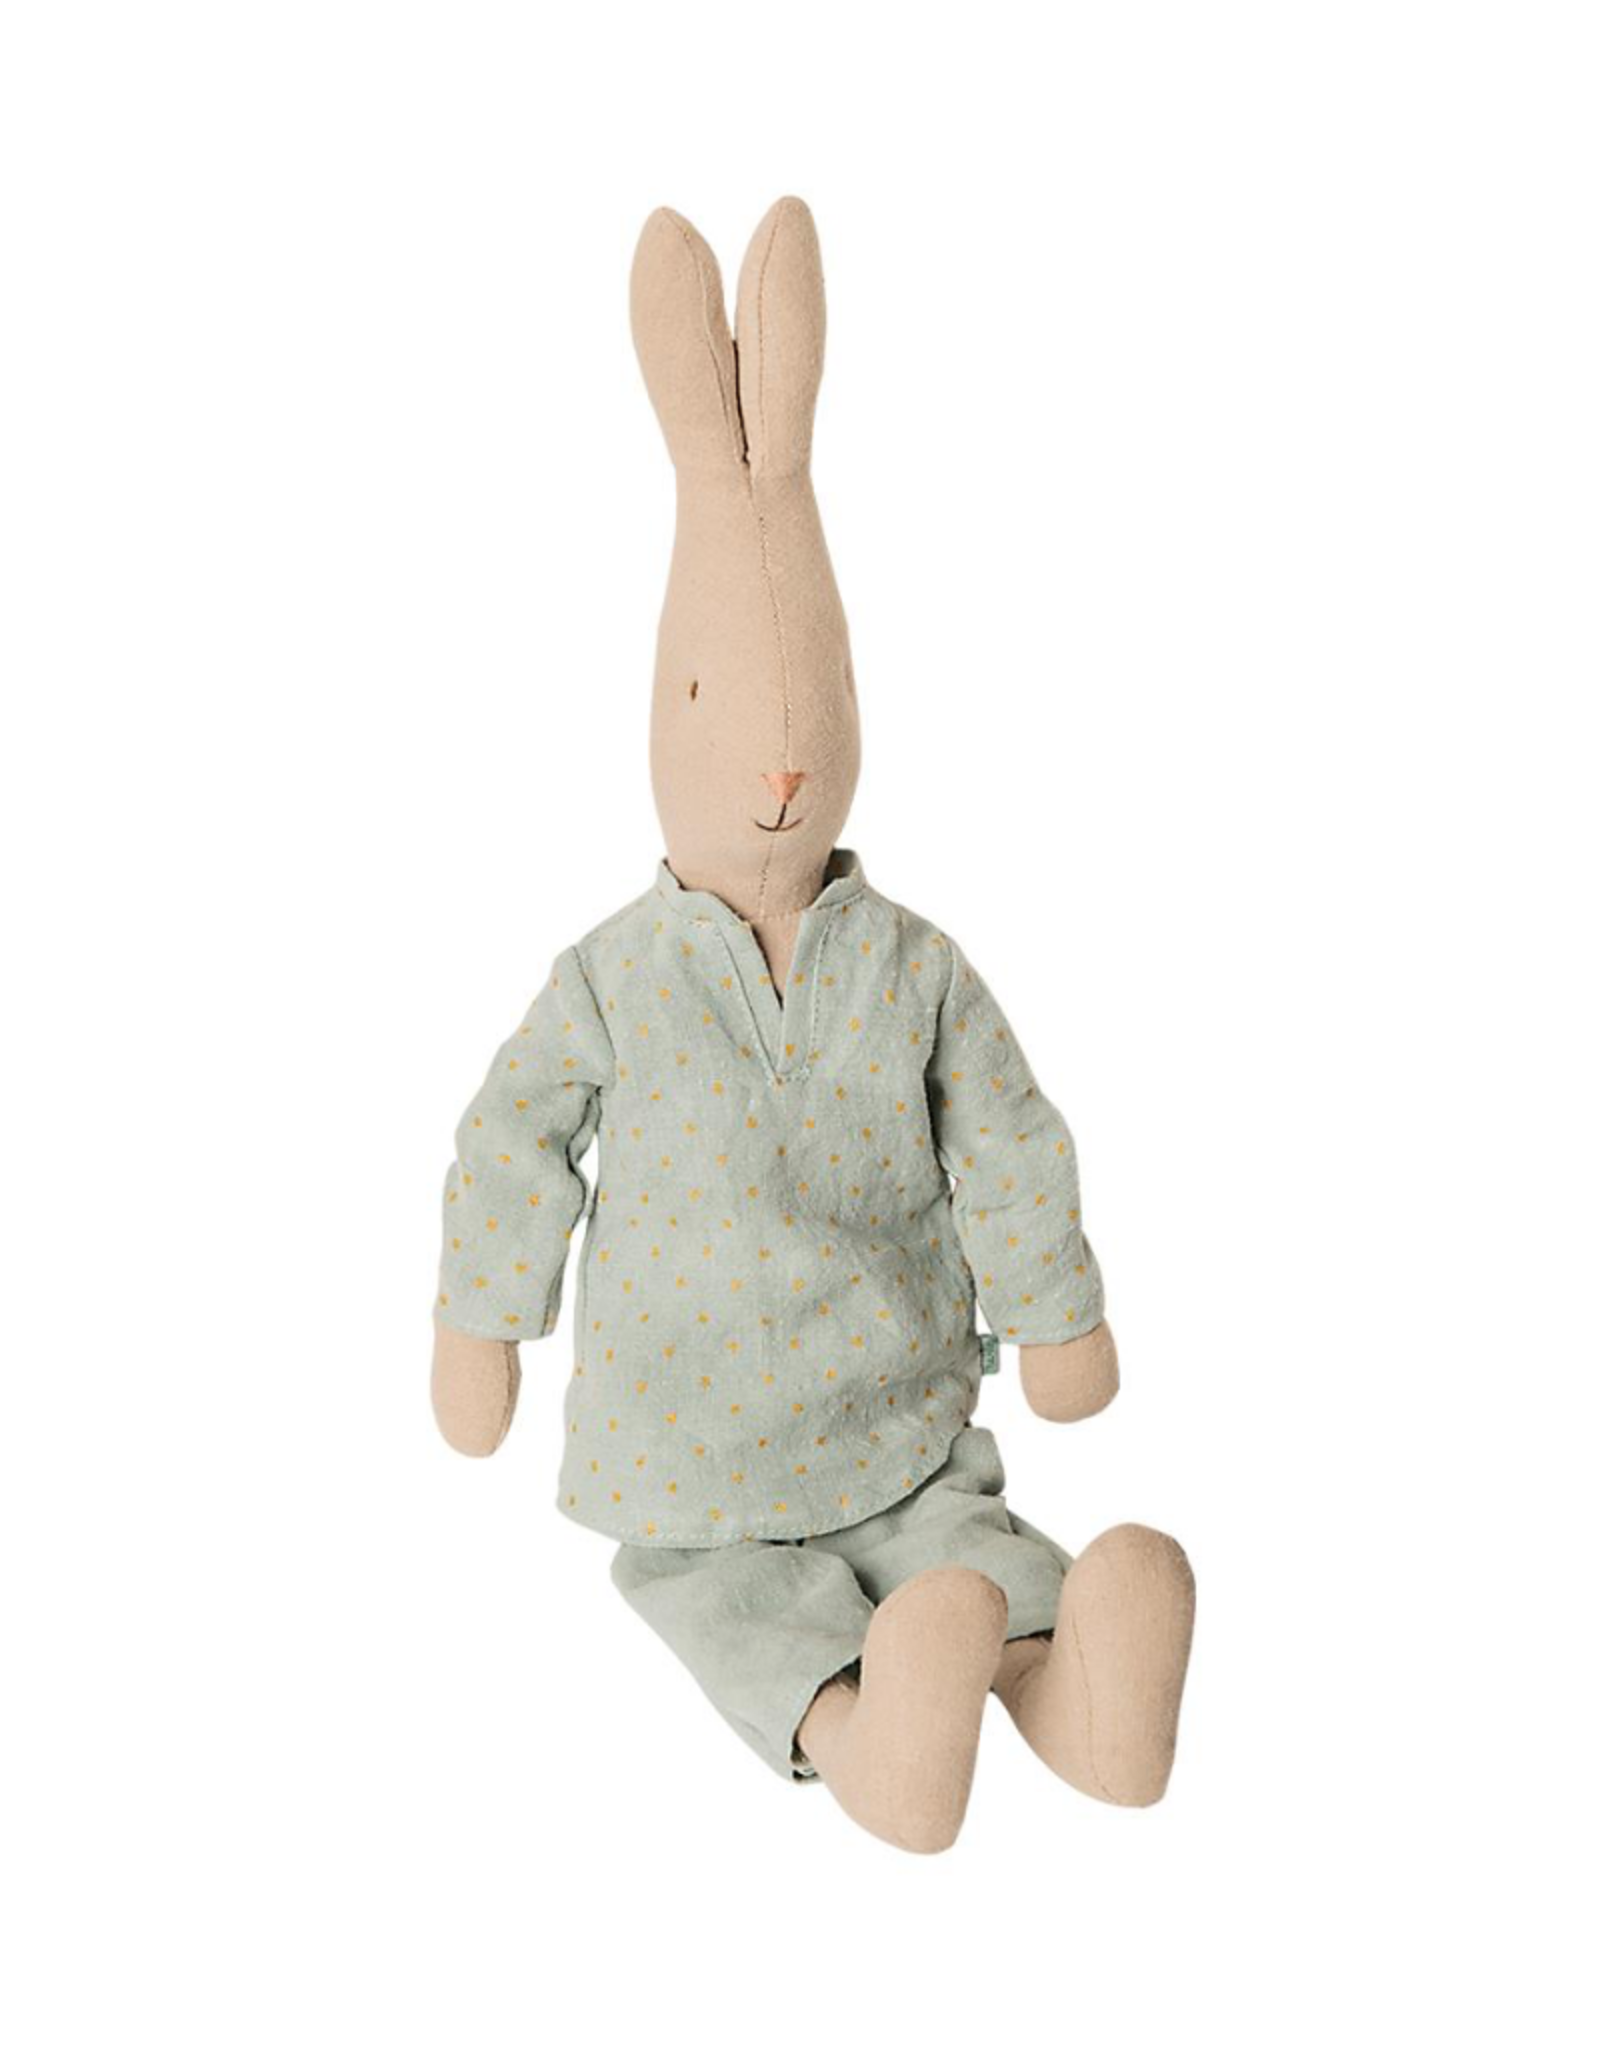 Pyjama Rabbit - Size 3